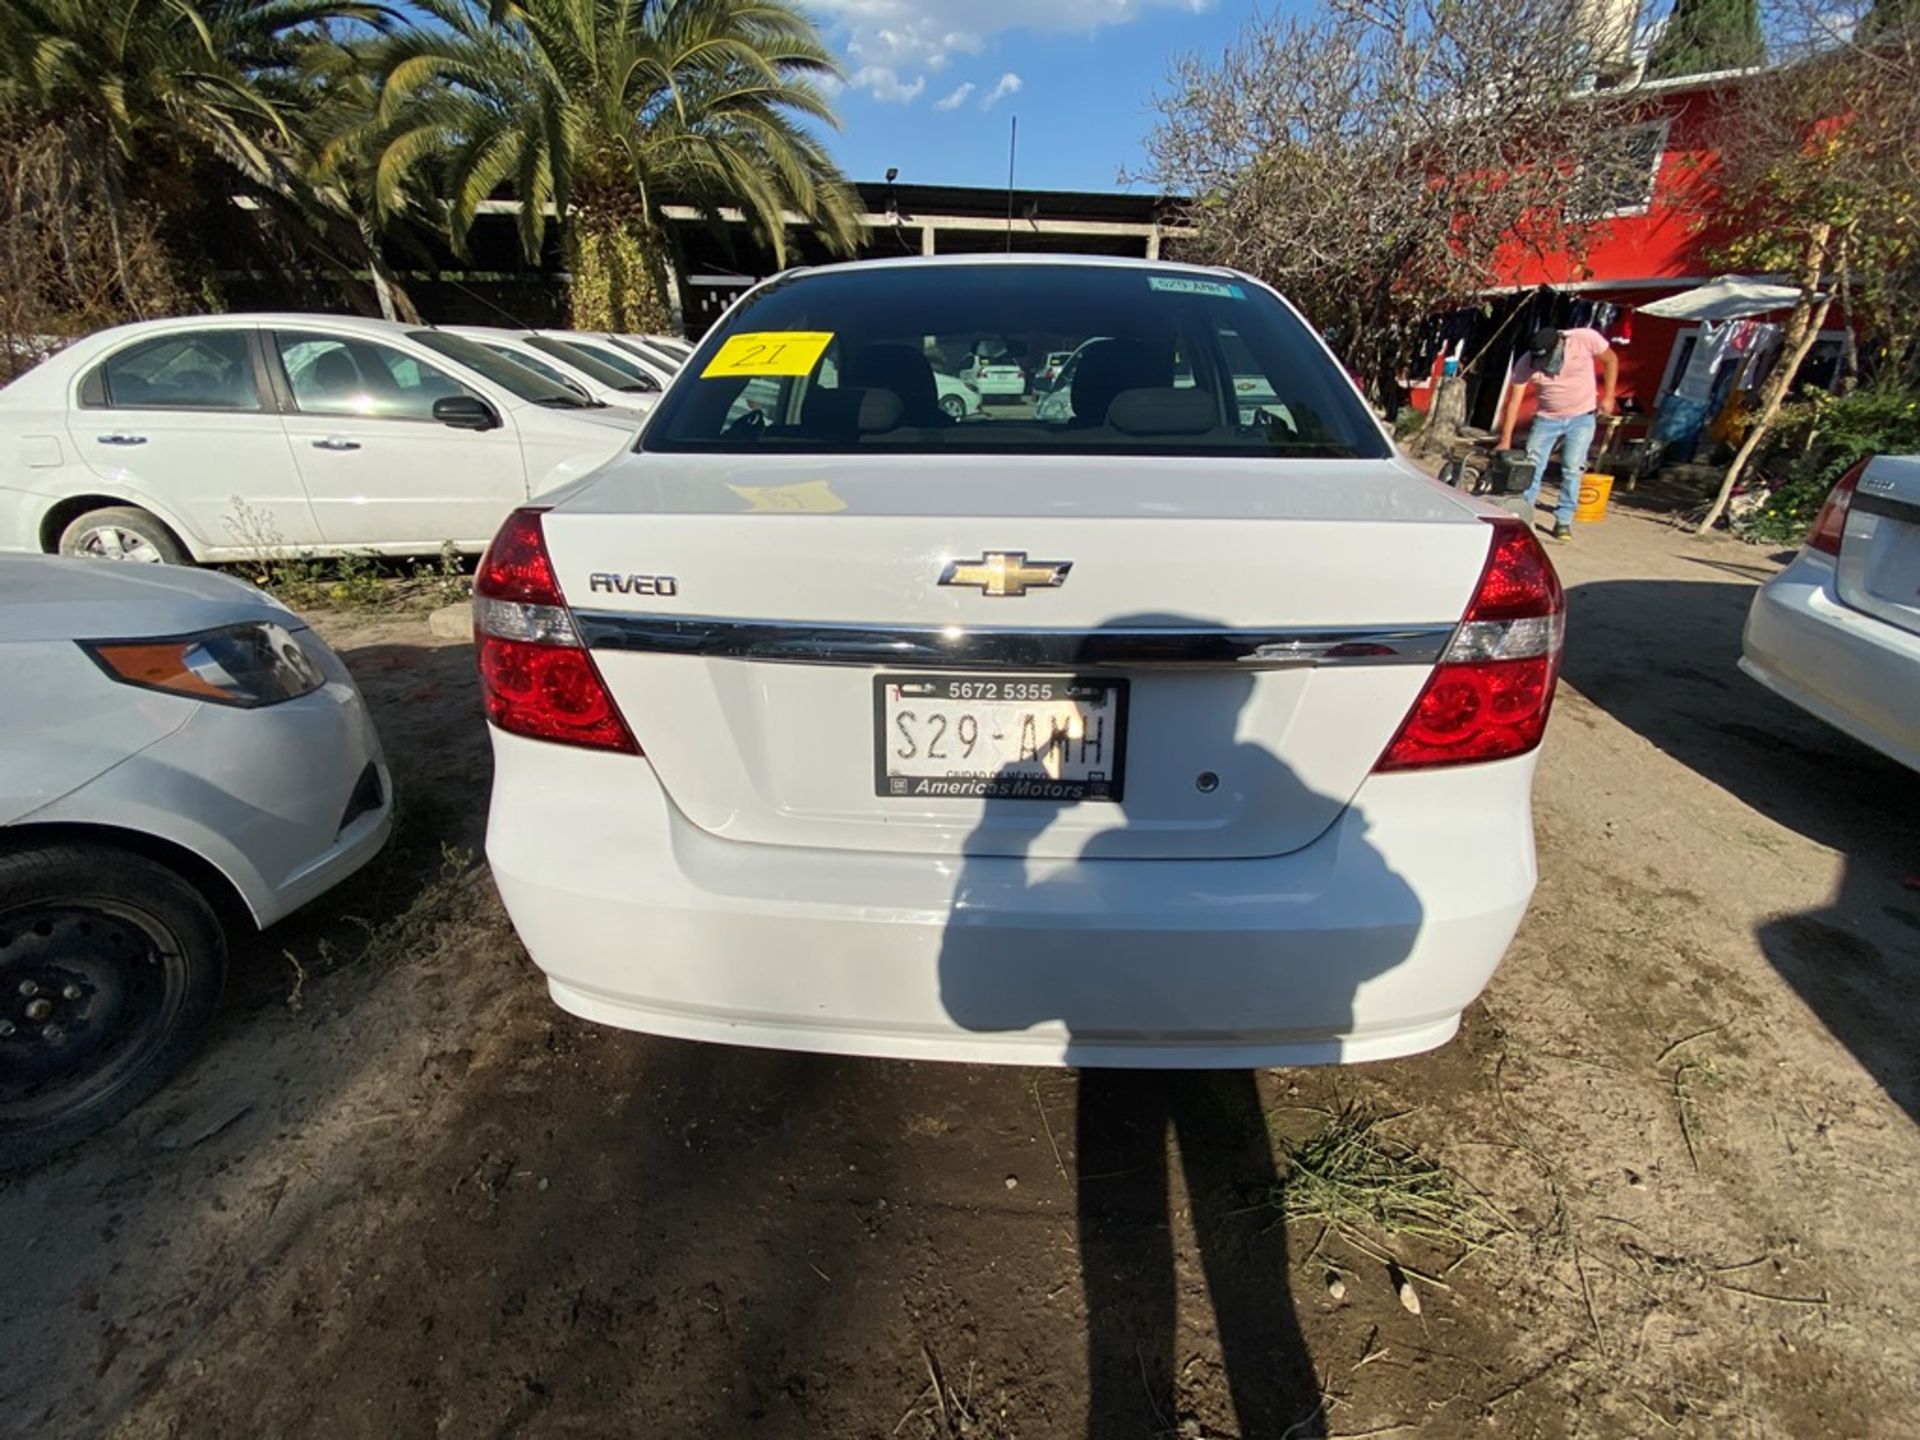 Vehículo marca Chevrolet tipo Aveo, modelo 2017, número de serie 3G1TB5CF8HL118972 - Image 6 of 17